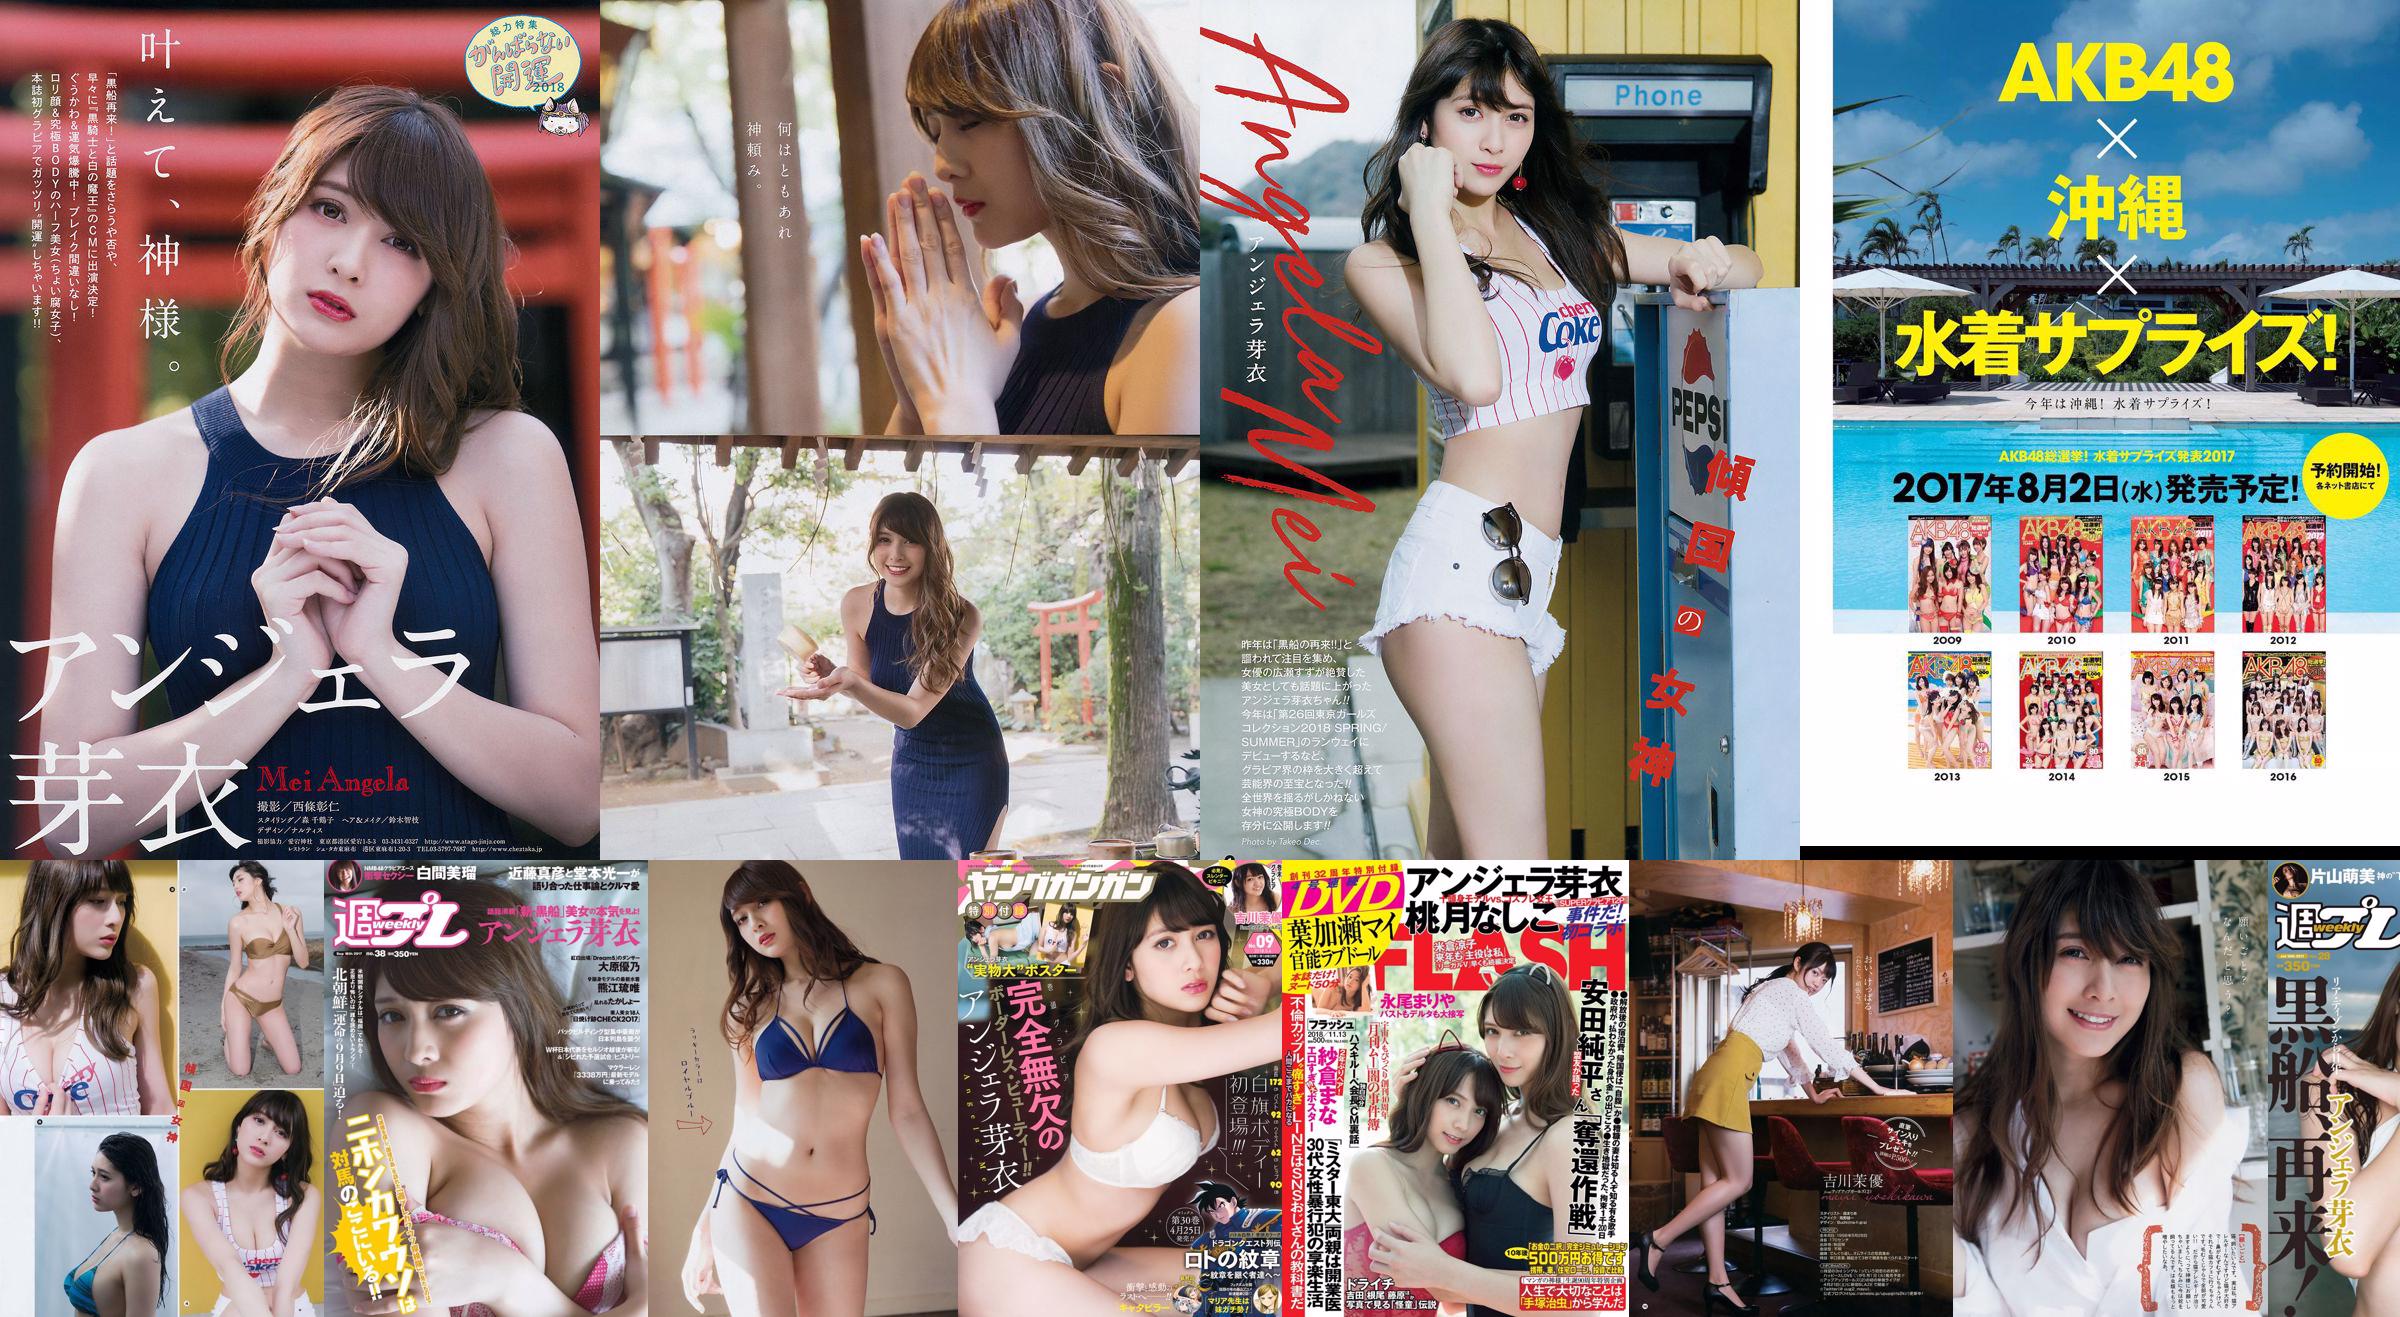 Angela Mei Riho Abiru Yuuna Suzuki Yuno Ohara Moemi Katayama Ito Ohno [Wöchentlicher Playboy] 2017 Nr. 28 Foto No.42ba97 Seite 1